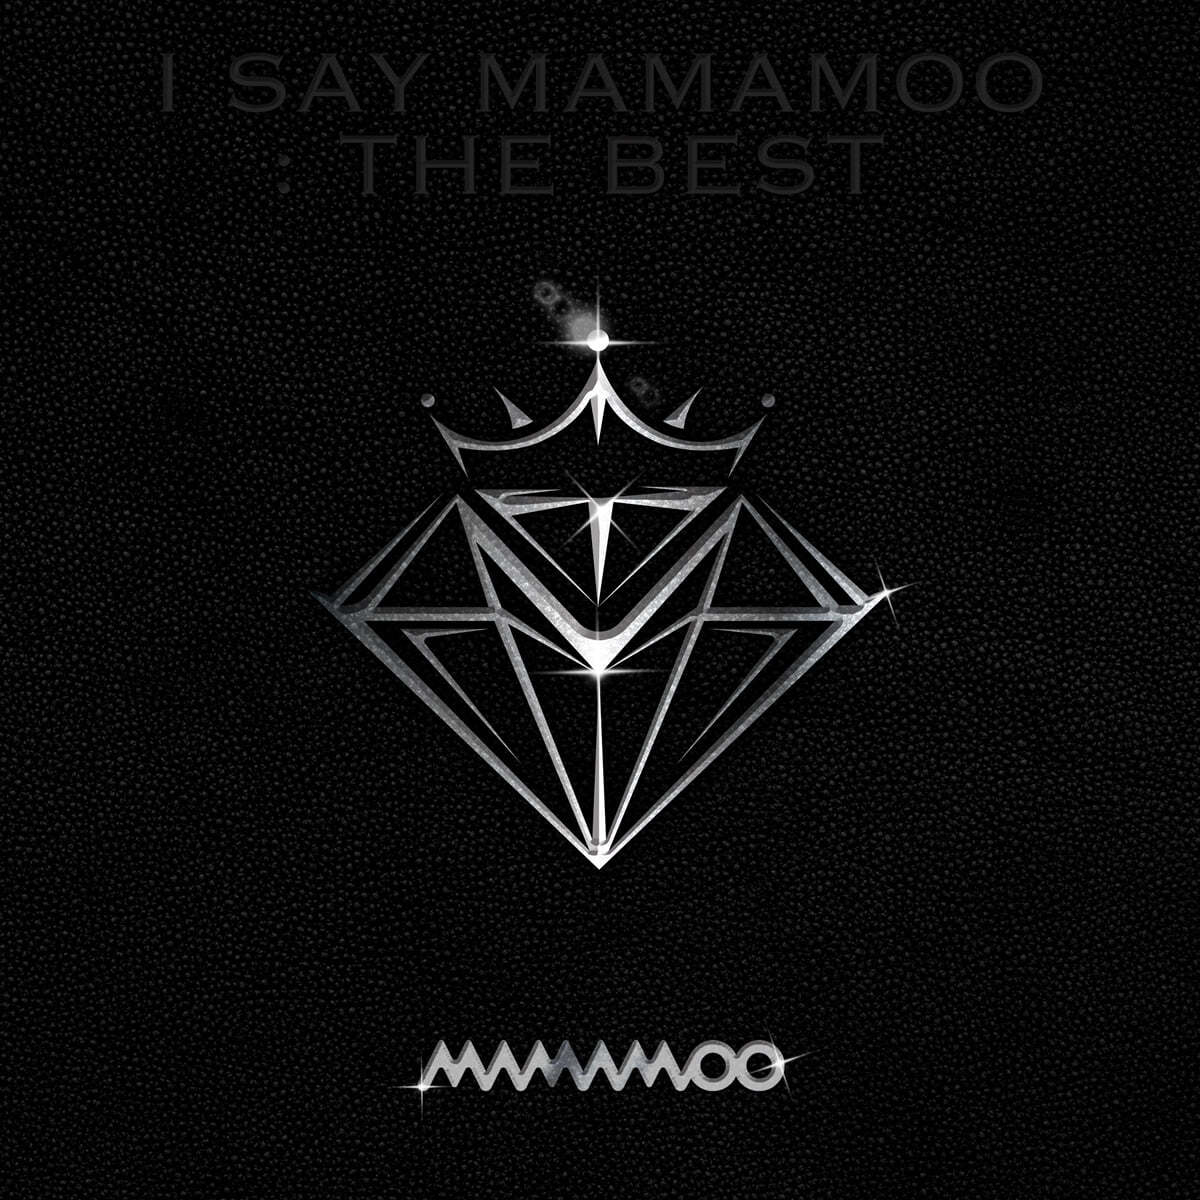 마마무 (Mamamoo) - I SAY MAMAMOO : THE BEST